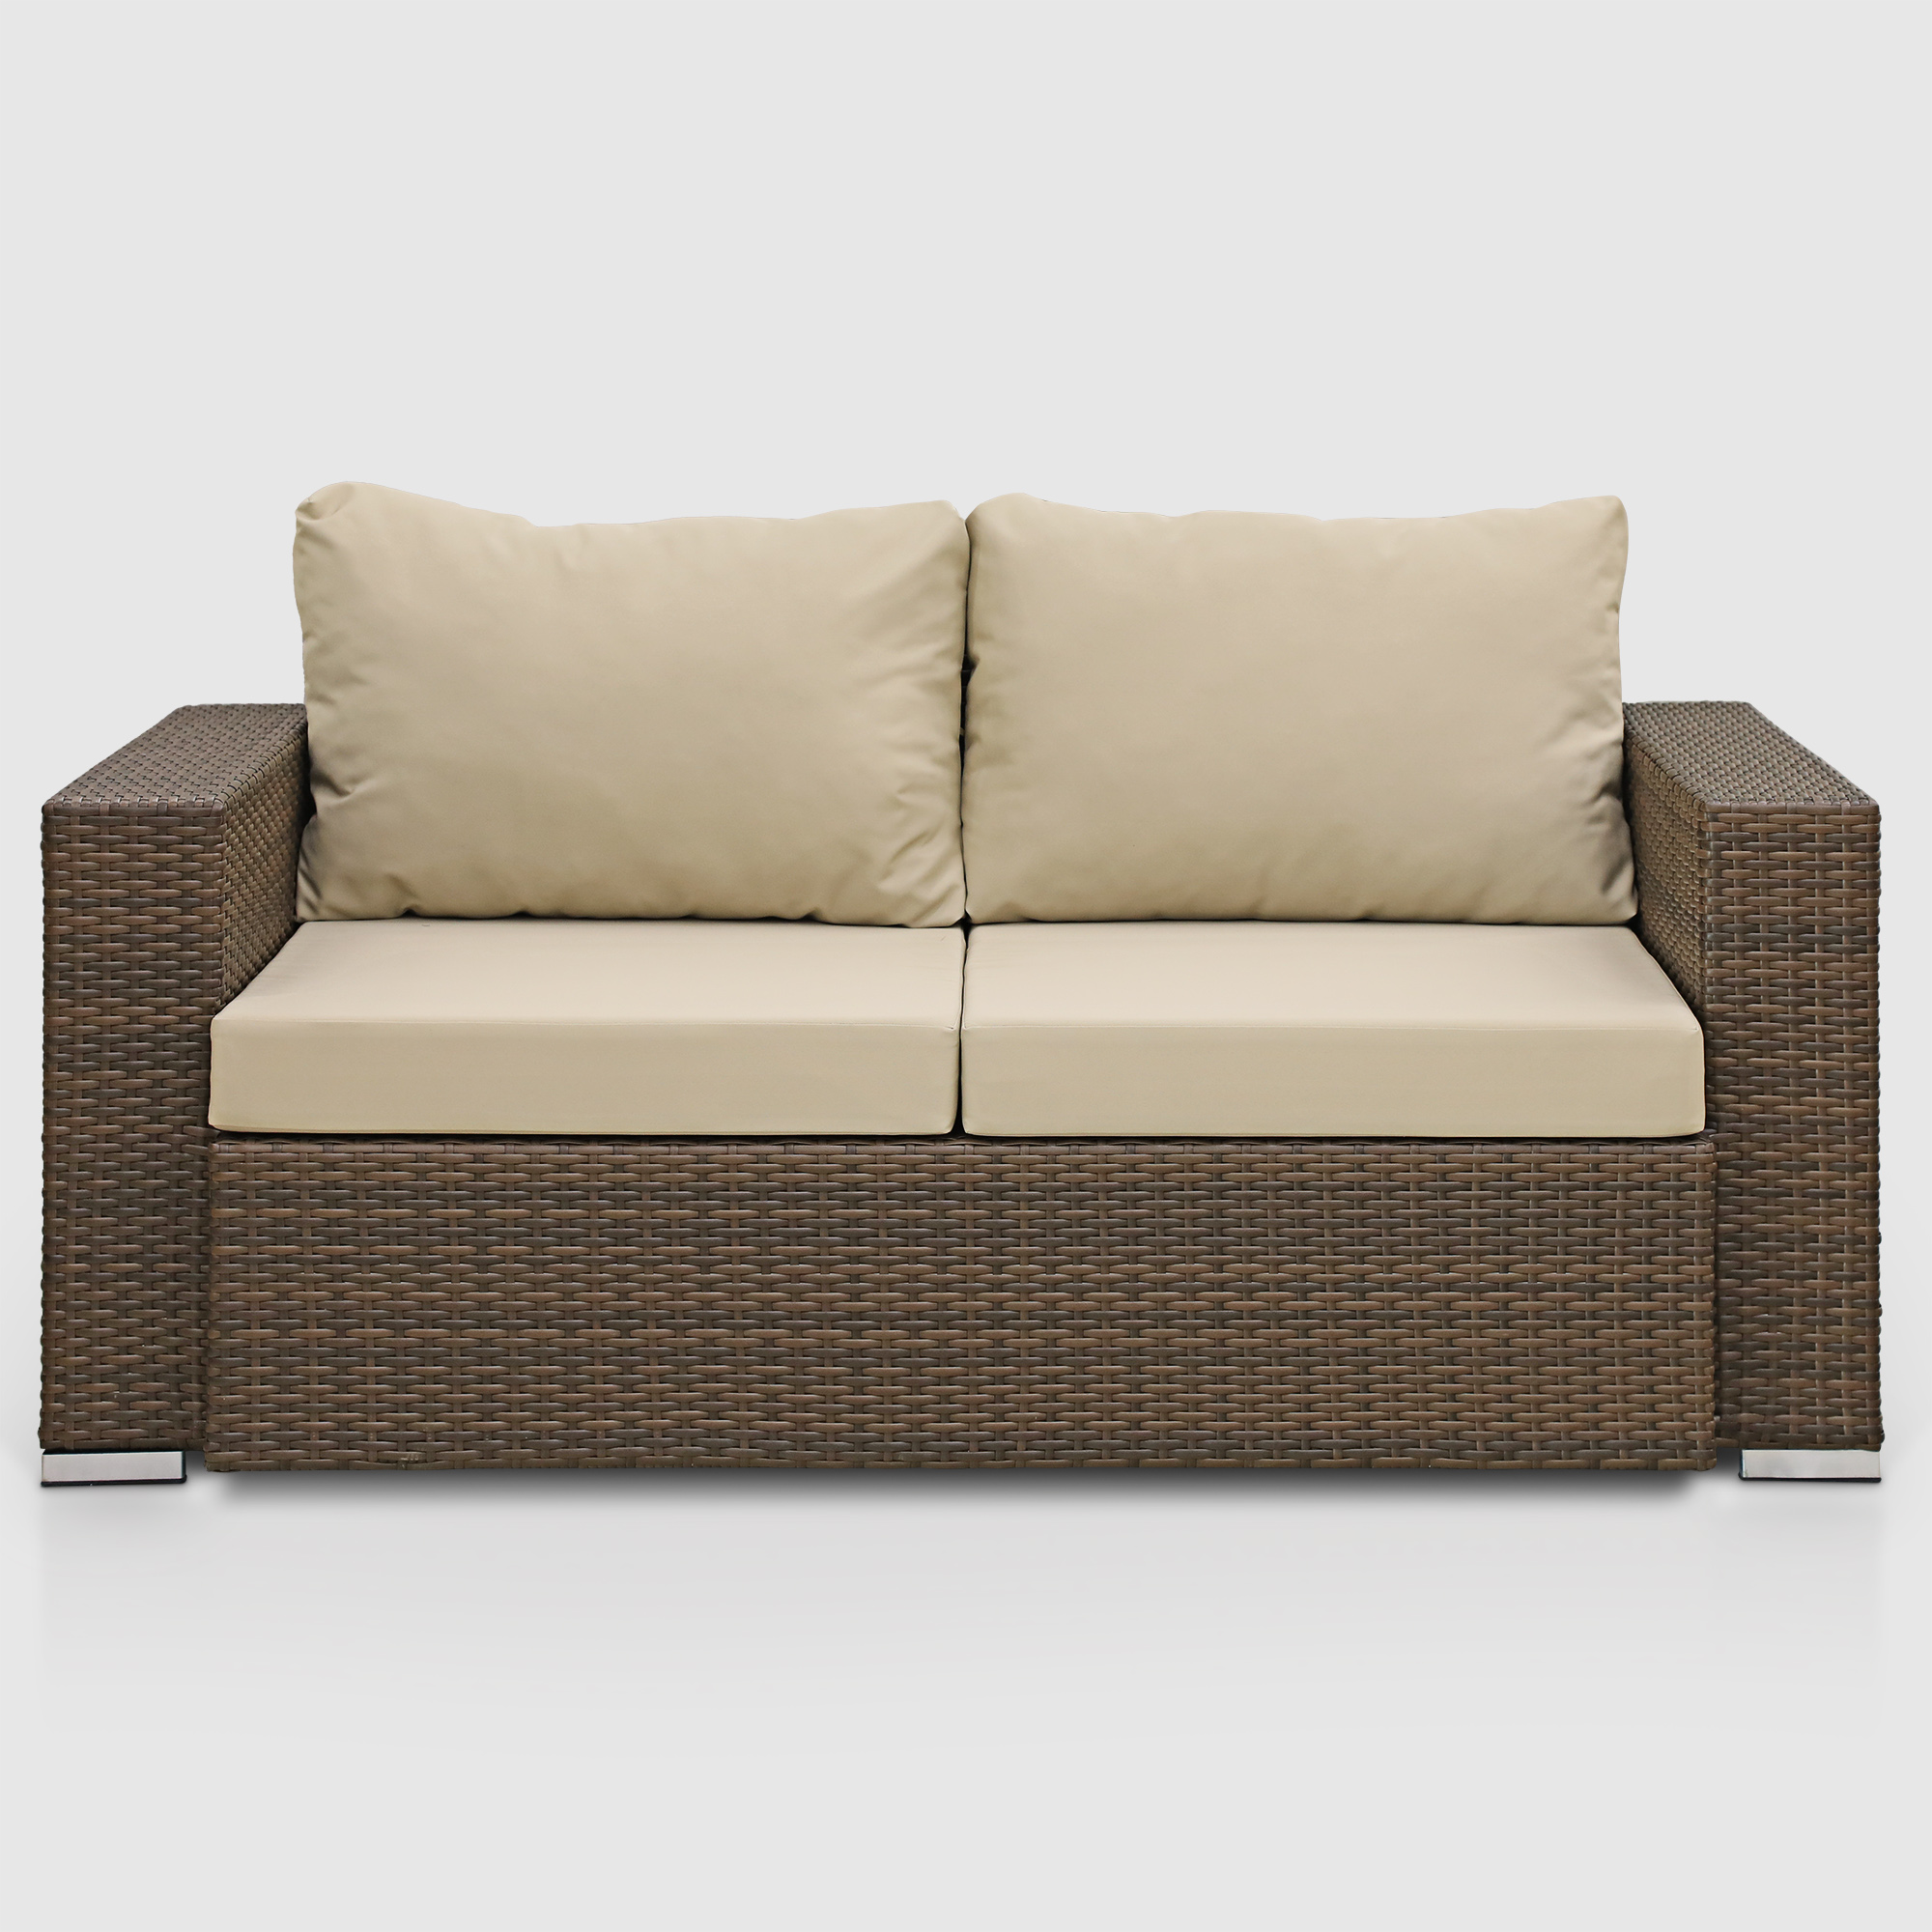 Комплект мебели Ns Rattan Cleo коричнево-бежевый 7 предметов, цвет коричневый, размер 199х68х72 - фото 6